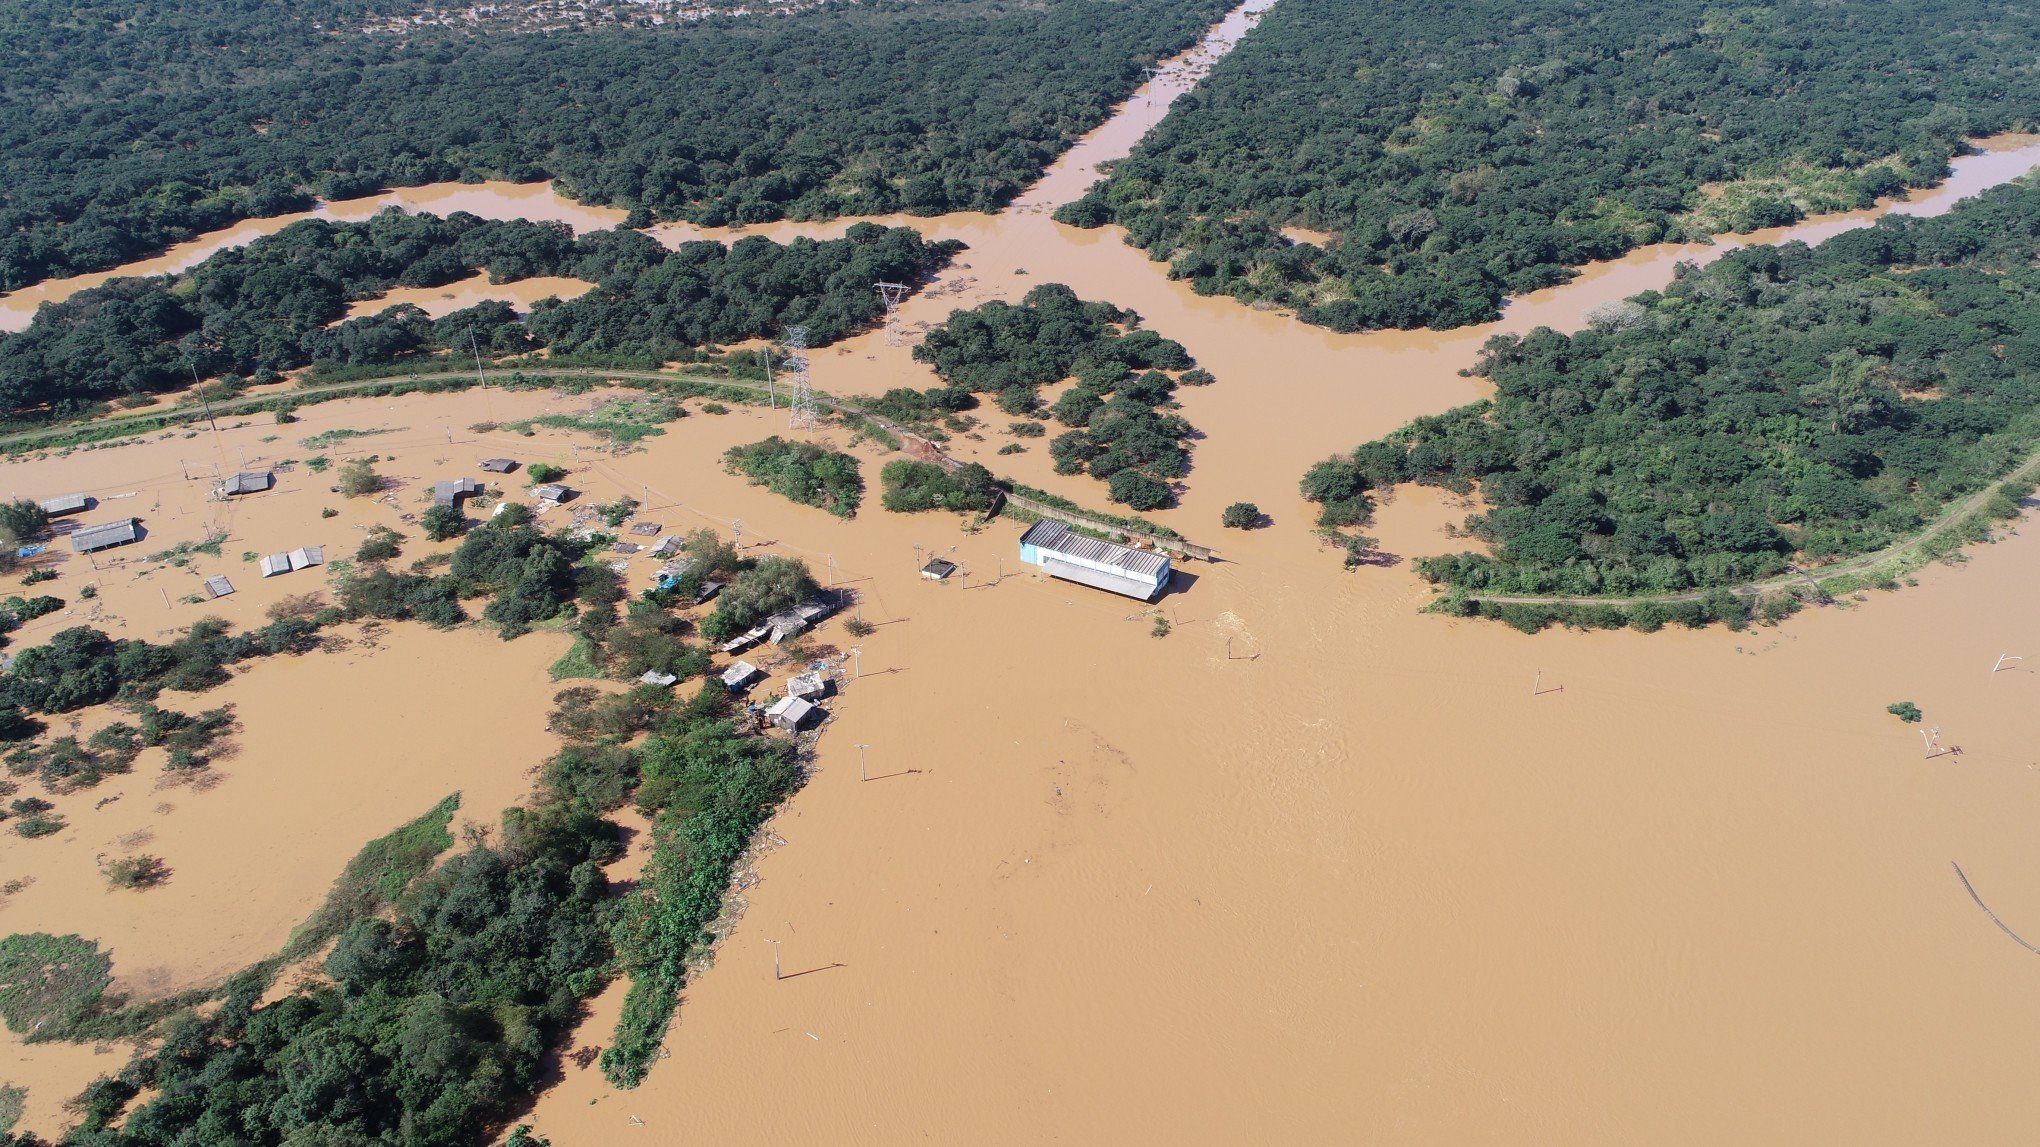 Estado quer assumir gestão dos sistemas de proteção contra enchentes, mas precisa de recursos